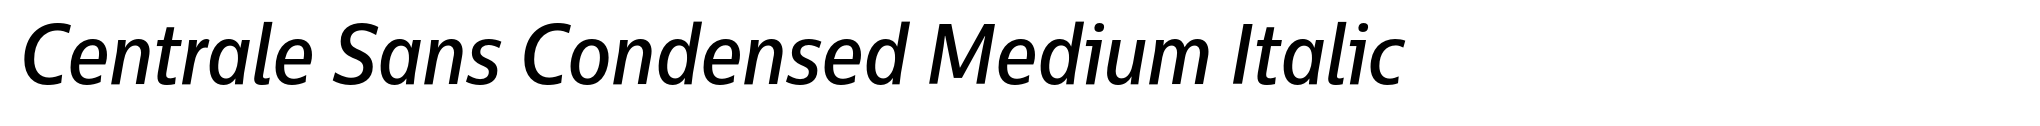 Centrale Sans Condensed Medium Italic image